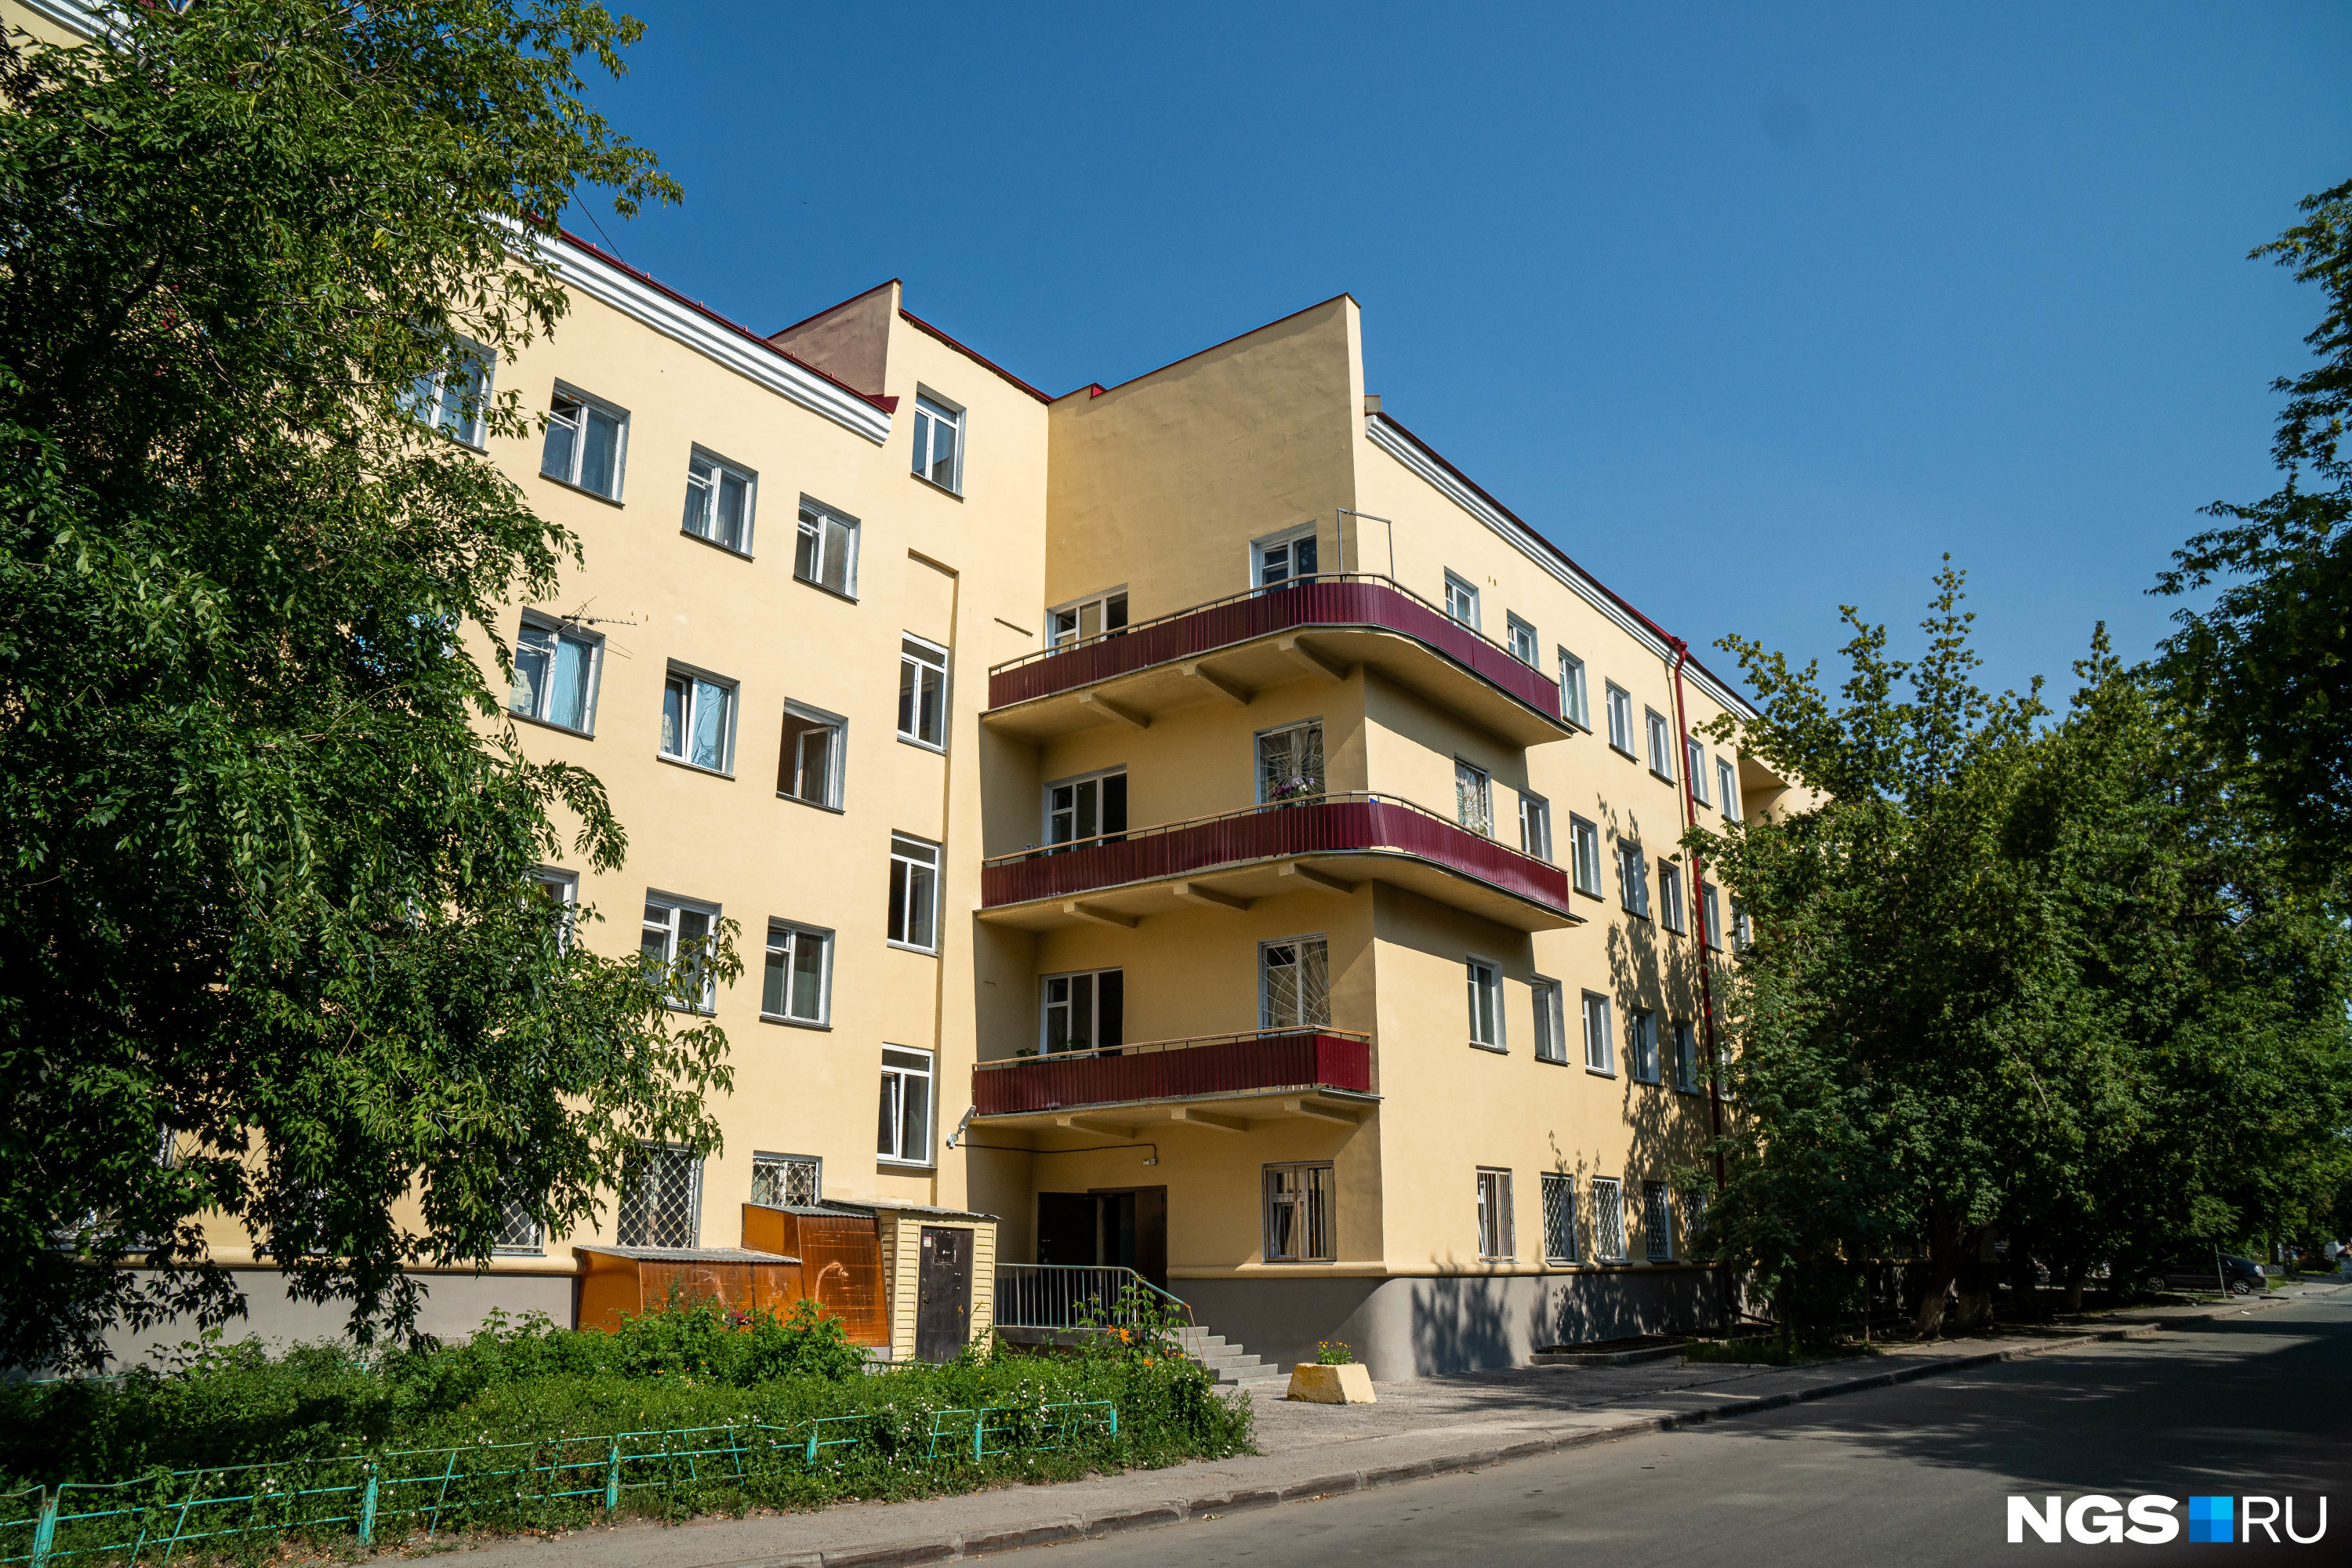 Здание муниципального общежития — маневренного фонда мэрии Новосибирска